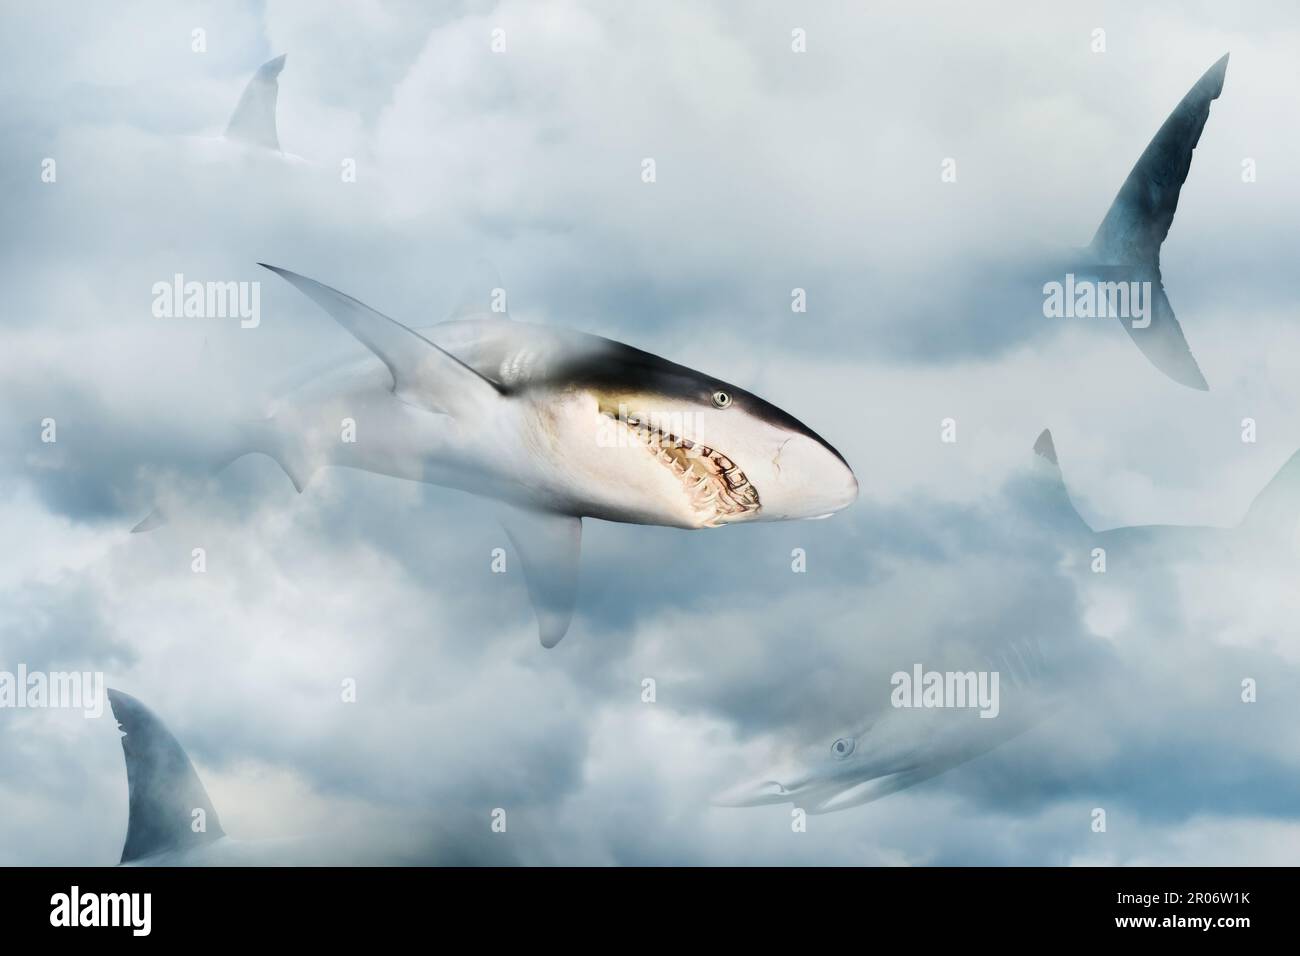 Primo piano degli squali che attraversano le nuvole. Concetto di dominazione, competizione e potere. Foto Stock